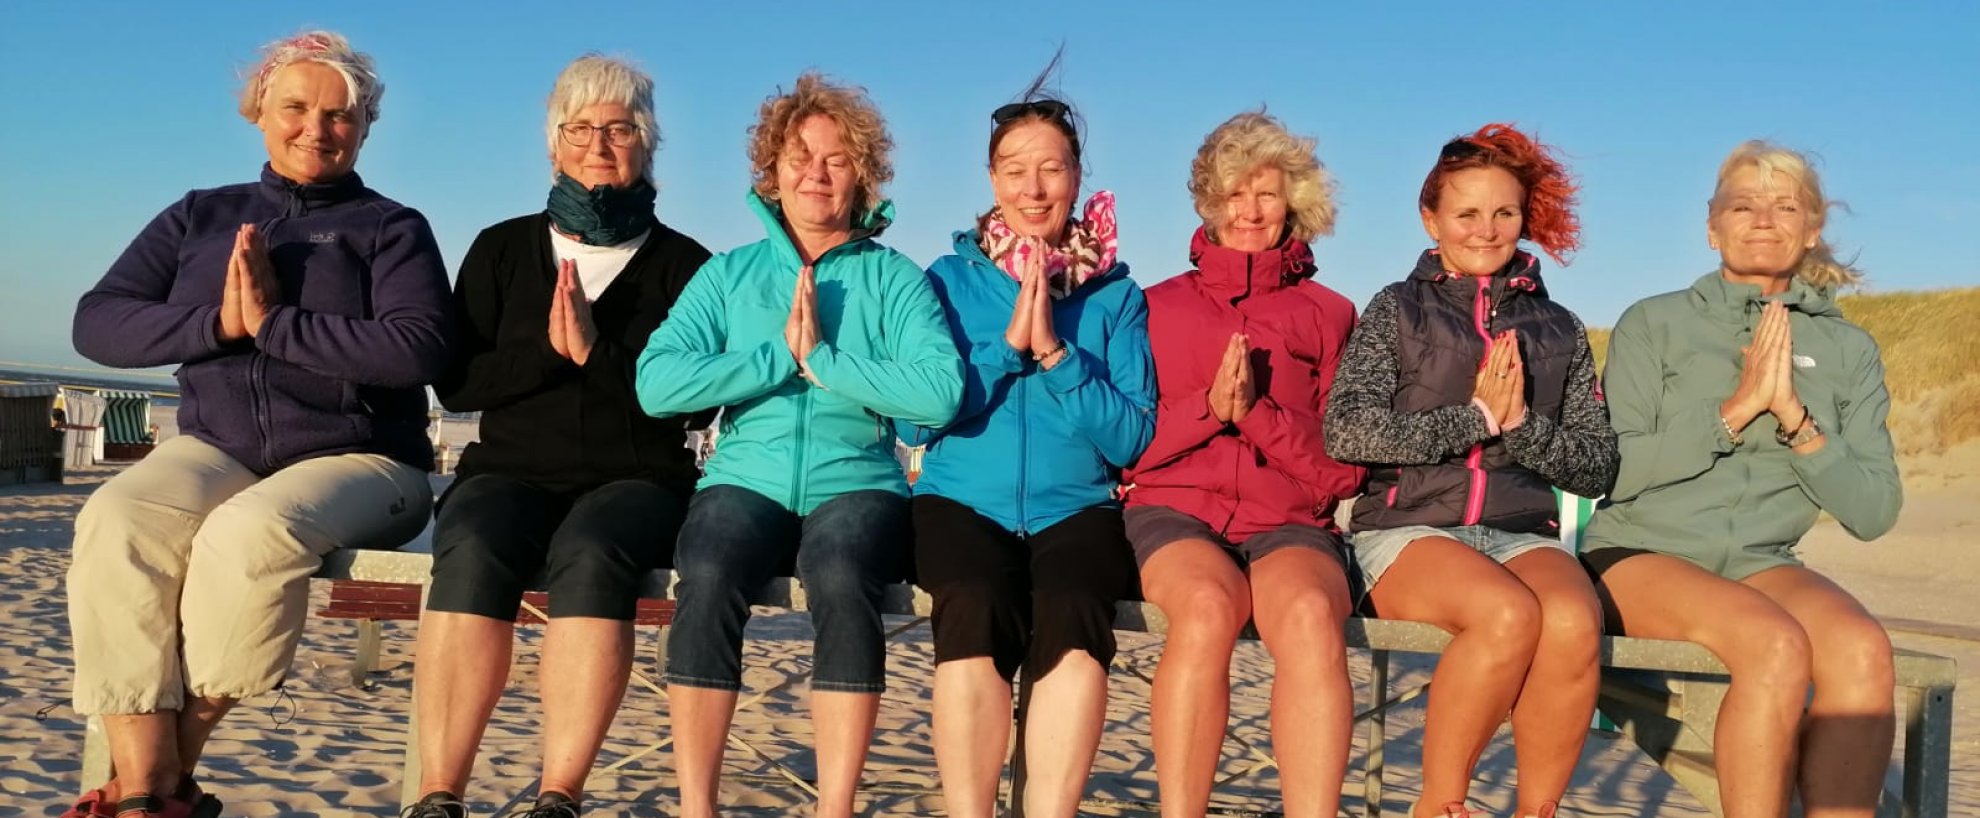 yoga urlaub reisen deutschland baltrum naturhotel gruppe strand